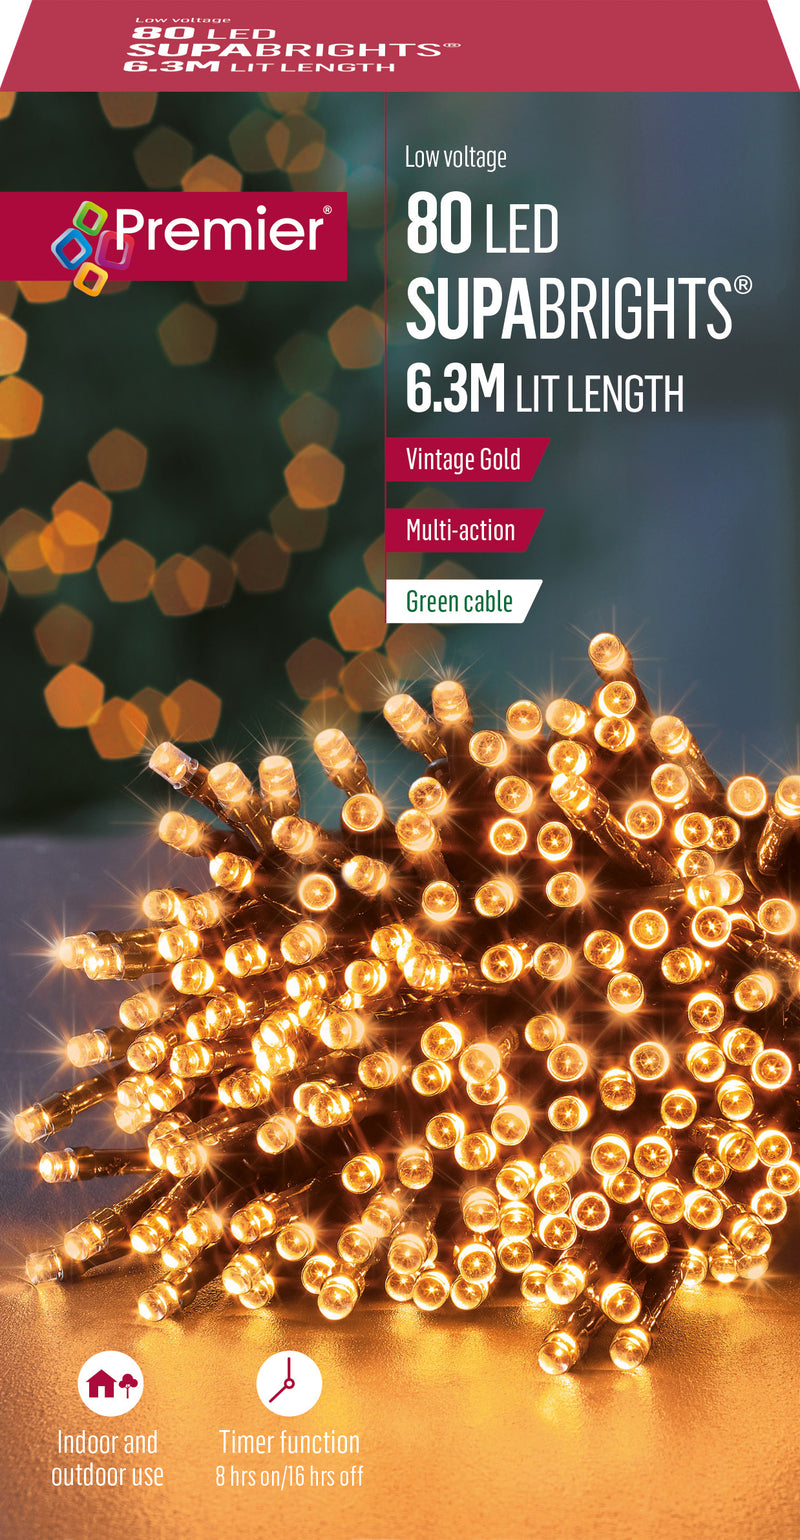 Premier LV178500VG Multi-Action Supabrights 80 LED Lights Vintage Gold With Timer